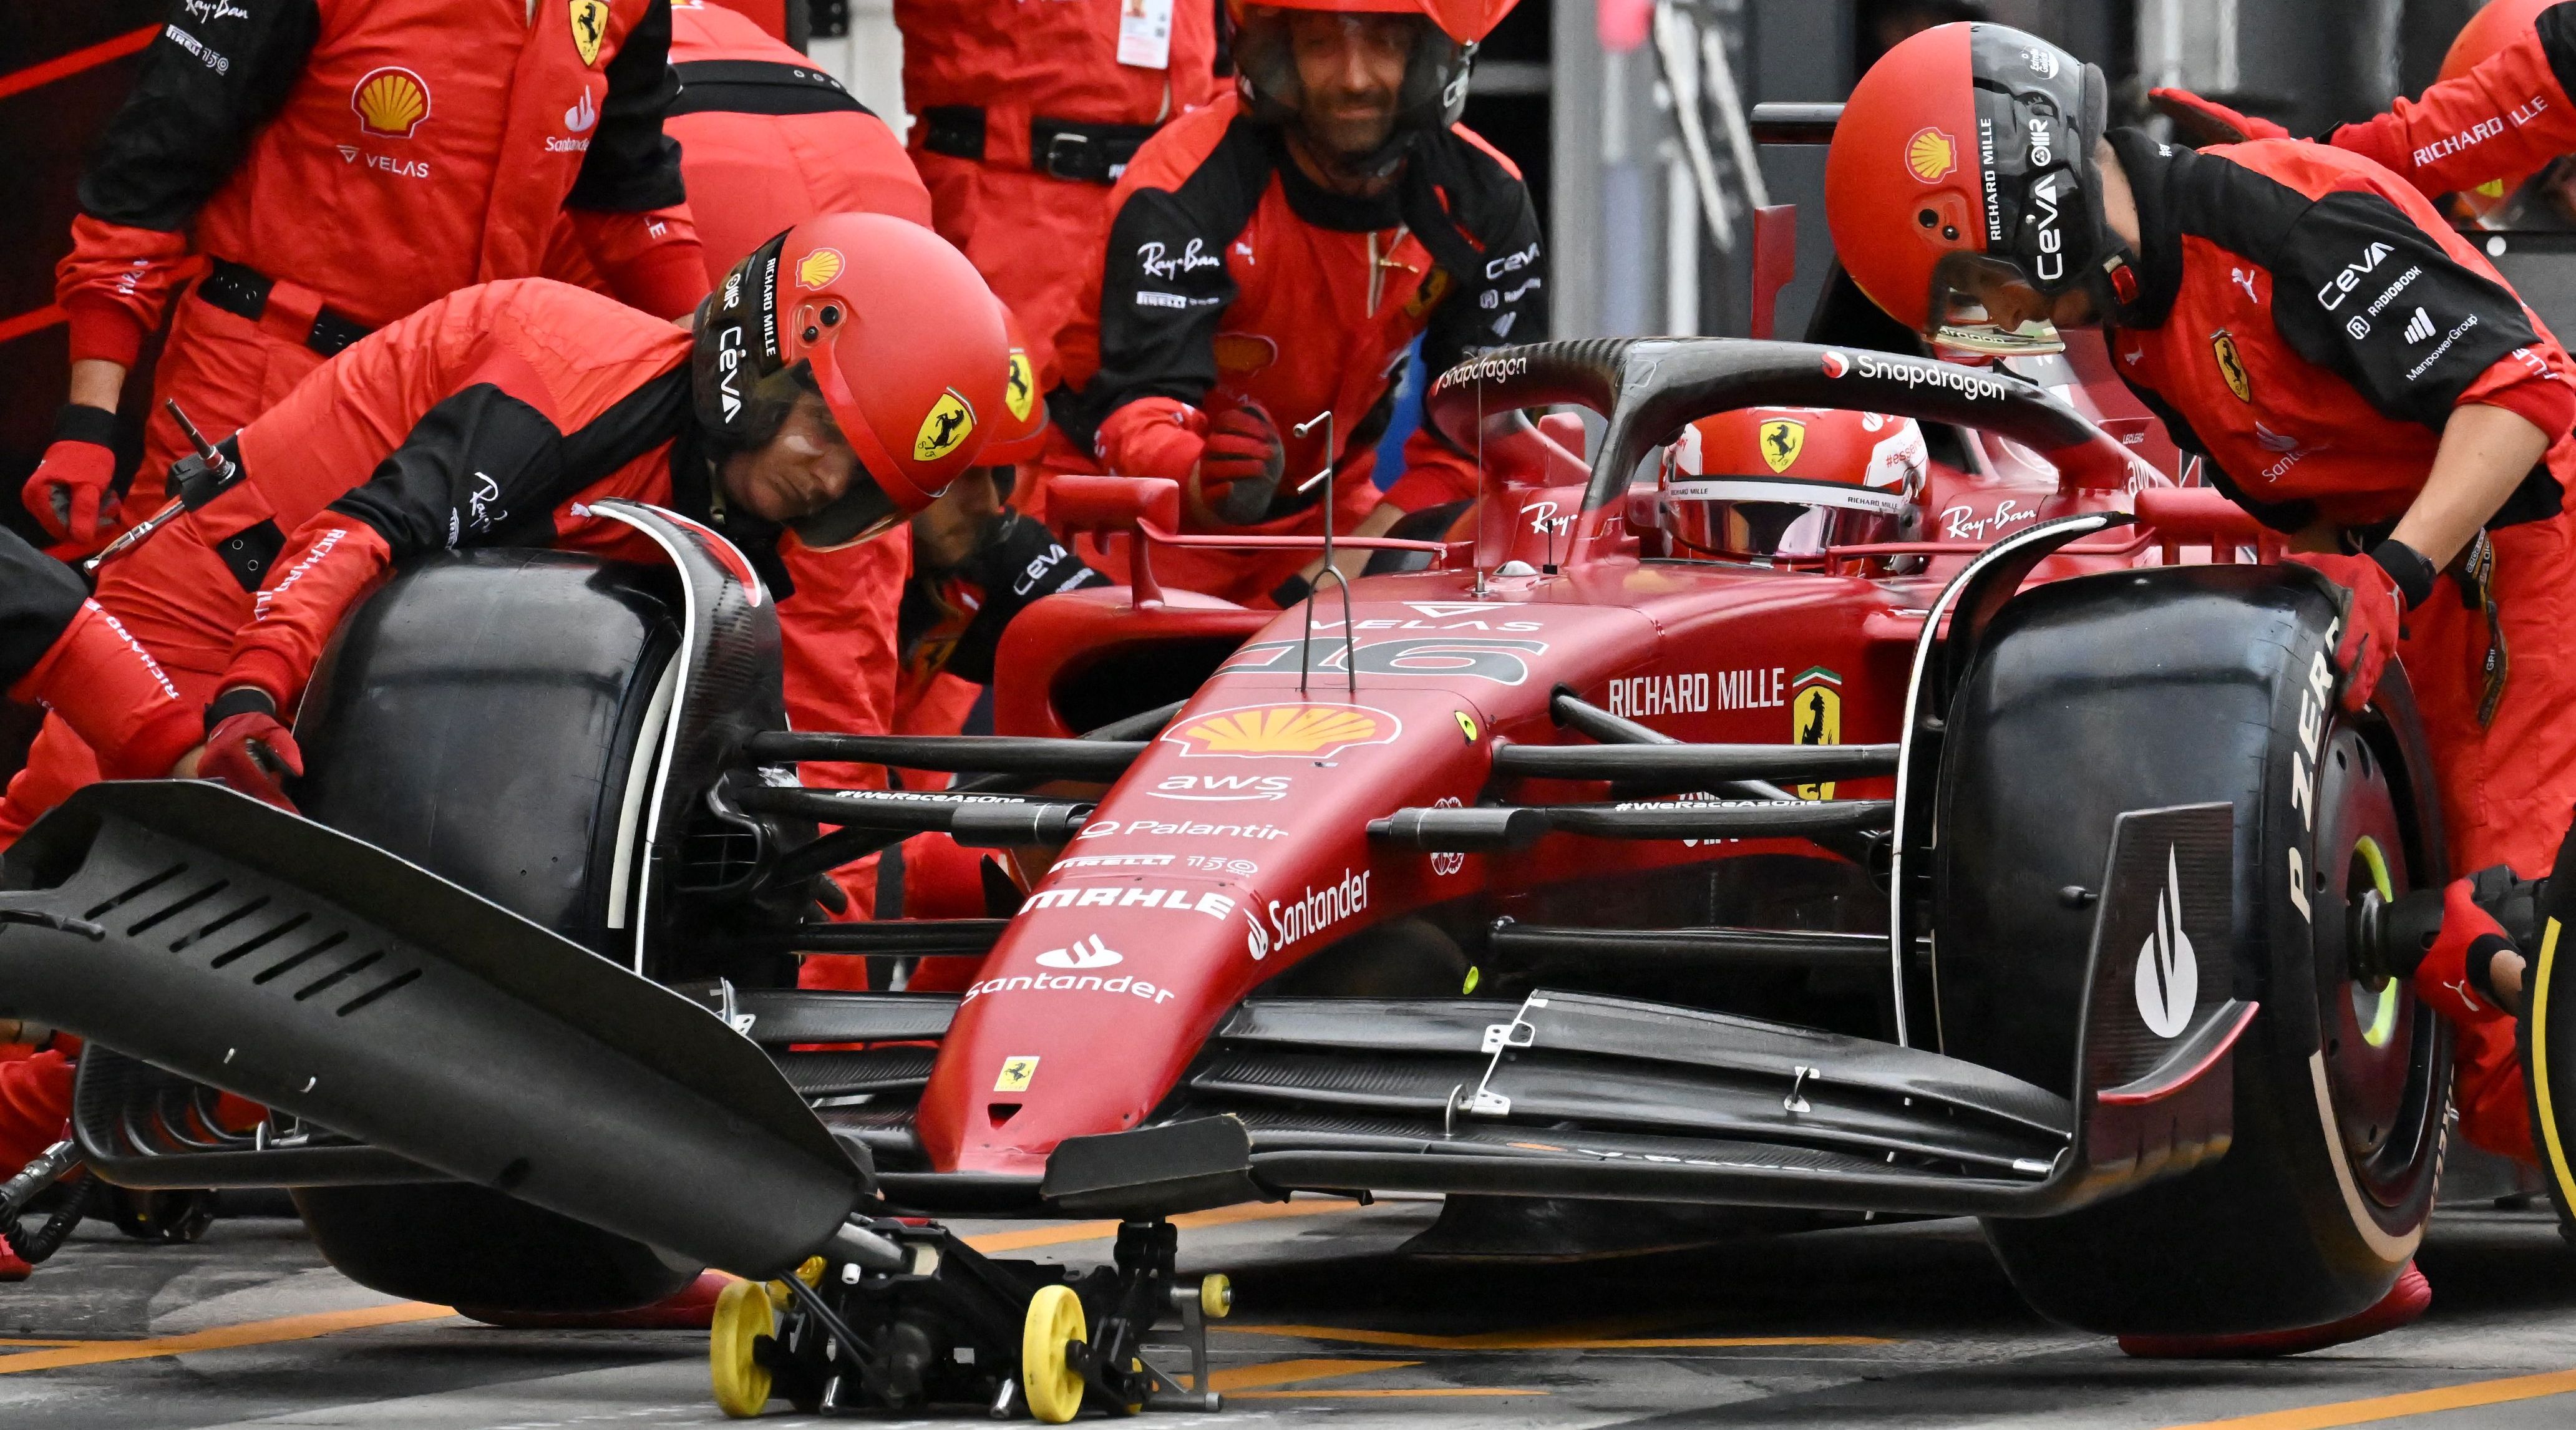 Ferrari Jelaskan Alasan Dibalik Blunder Strategi di GP Hungaria